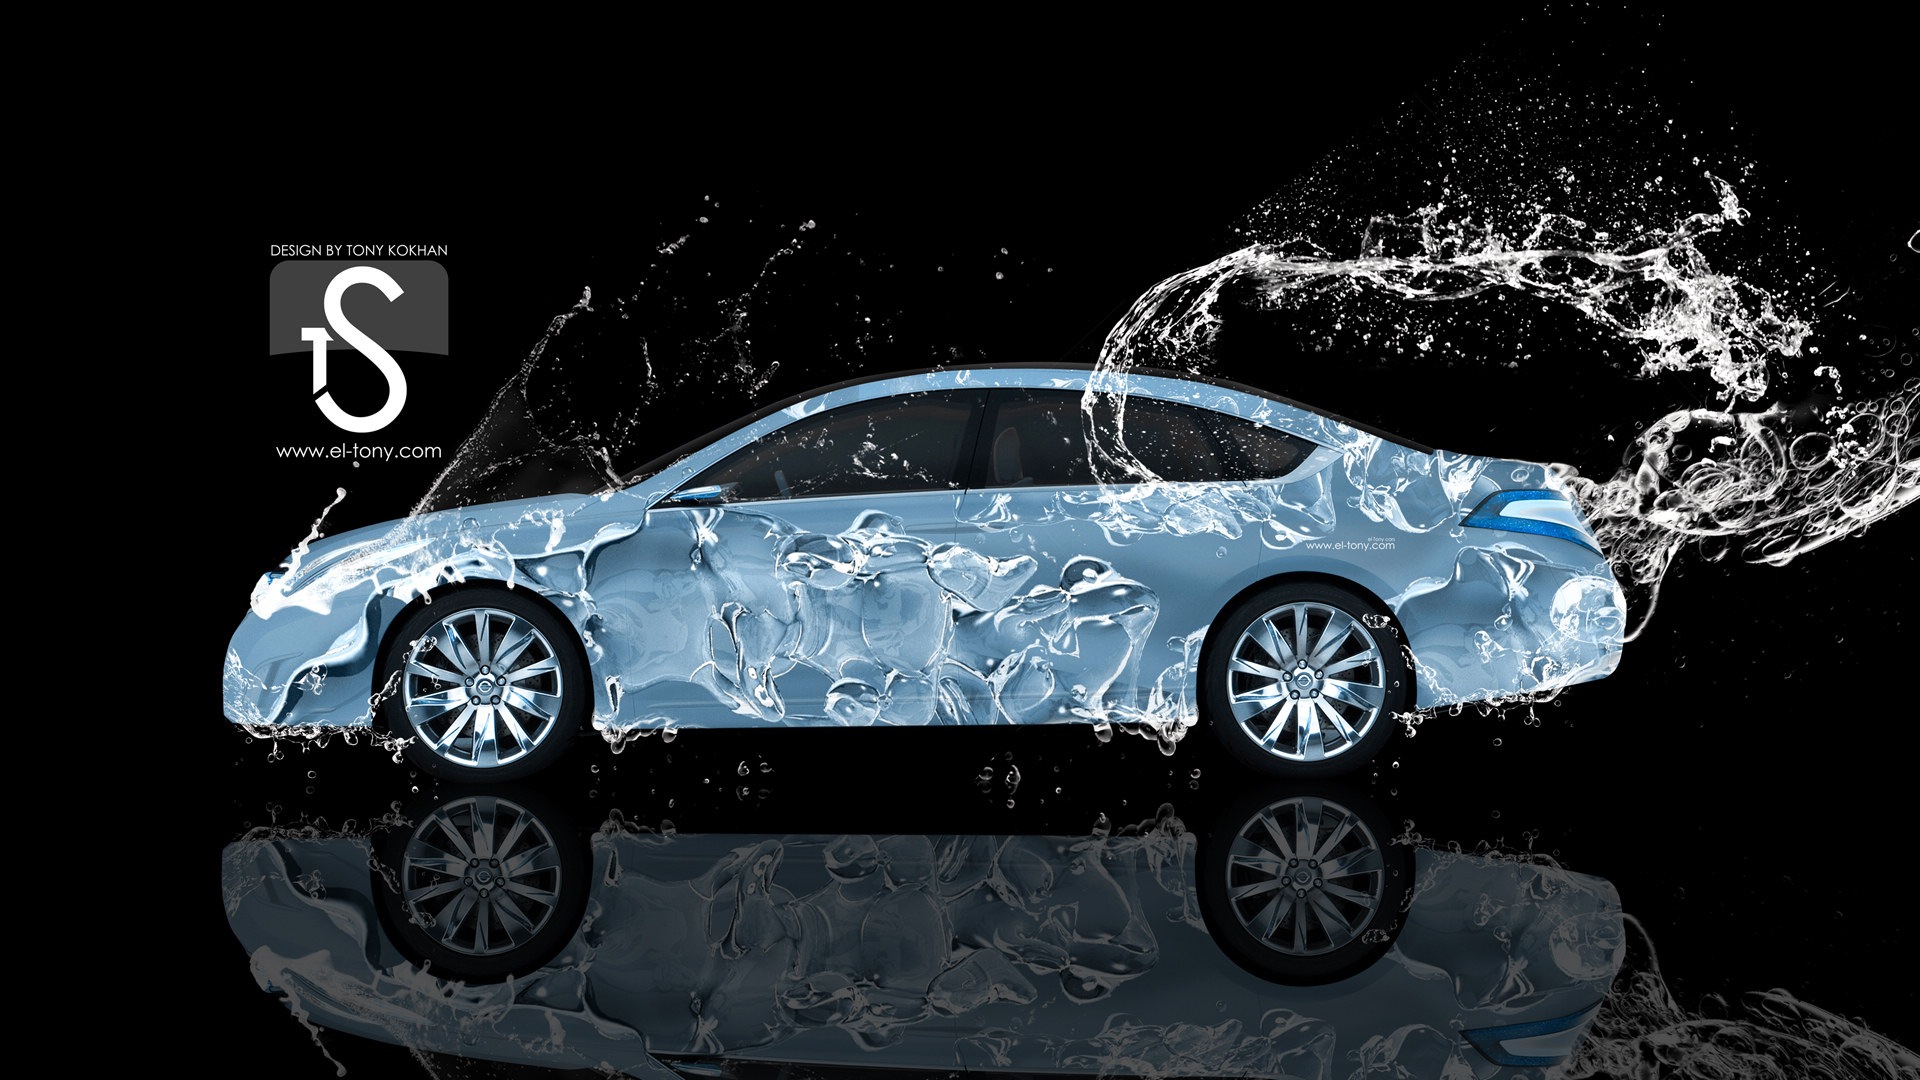 Les gouttes d'eau splash, beau fond d'écran de conception créative de voiture #15 - 1920x1080